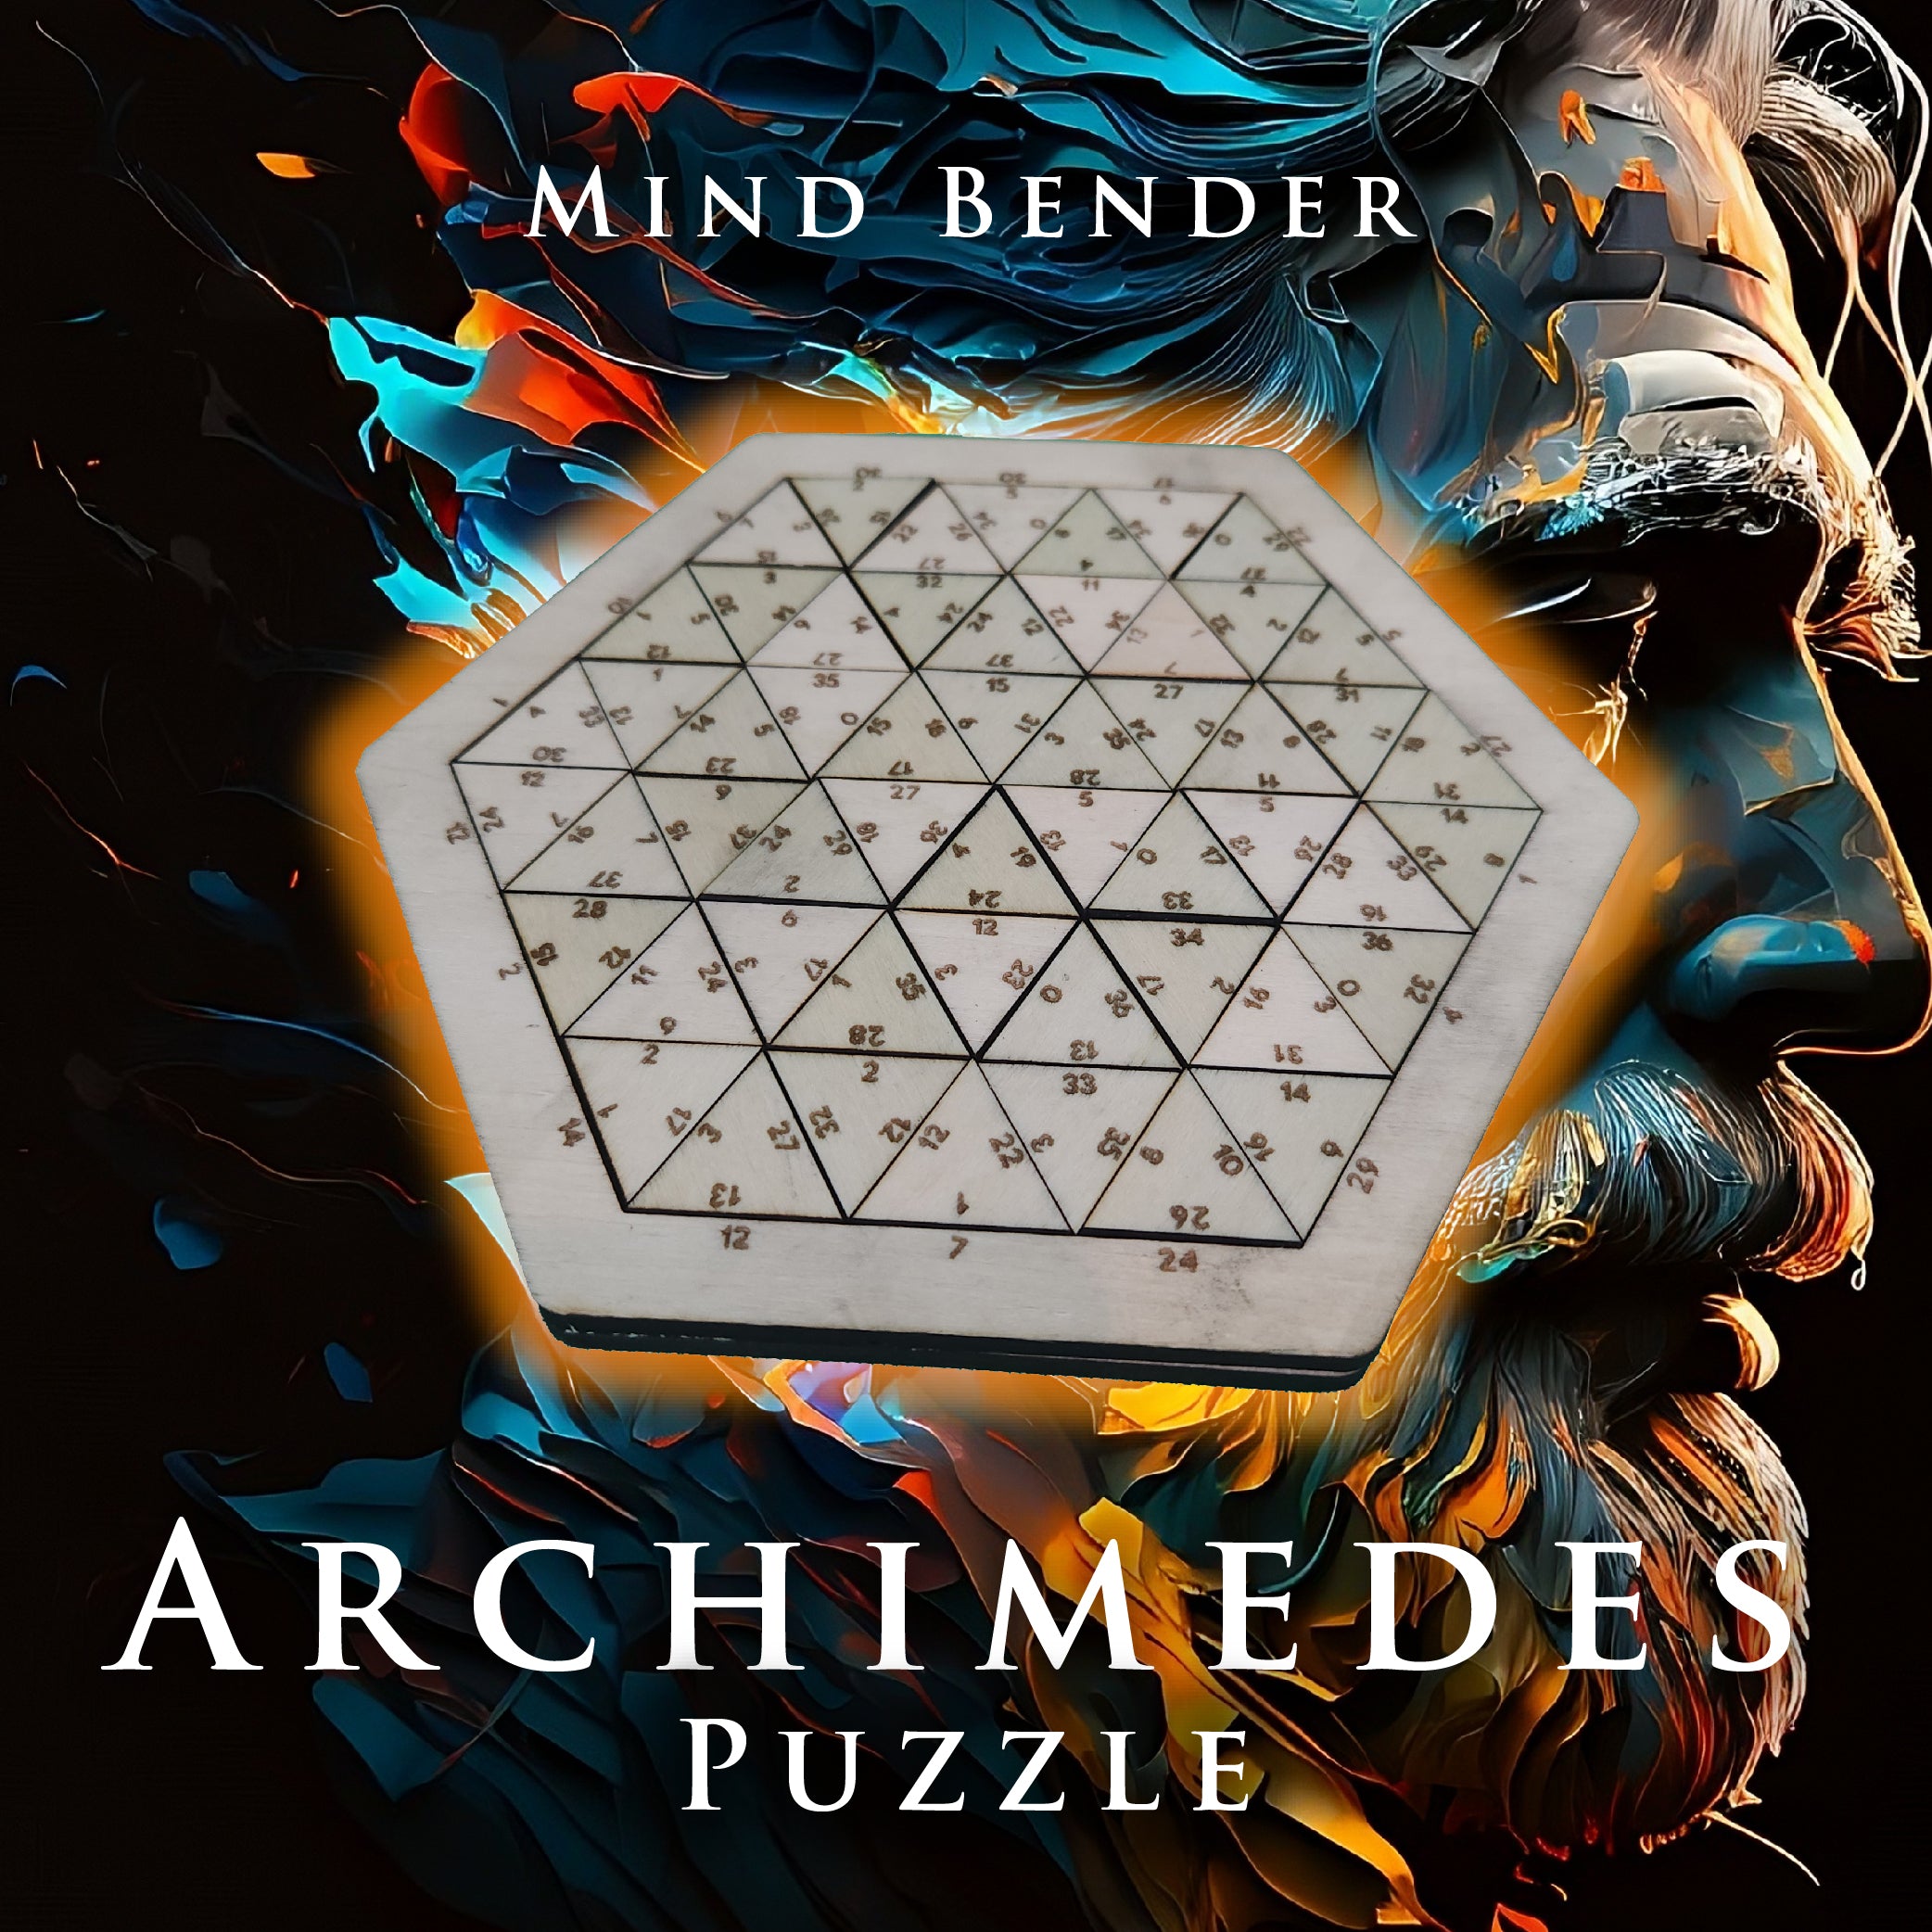 Mind Bender “Archimedes” Puzzle